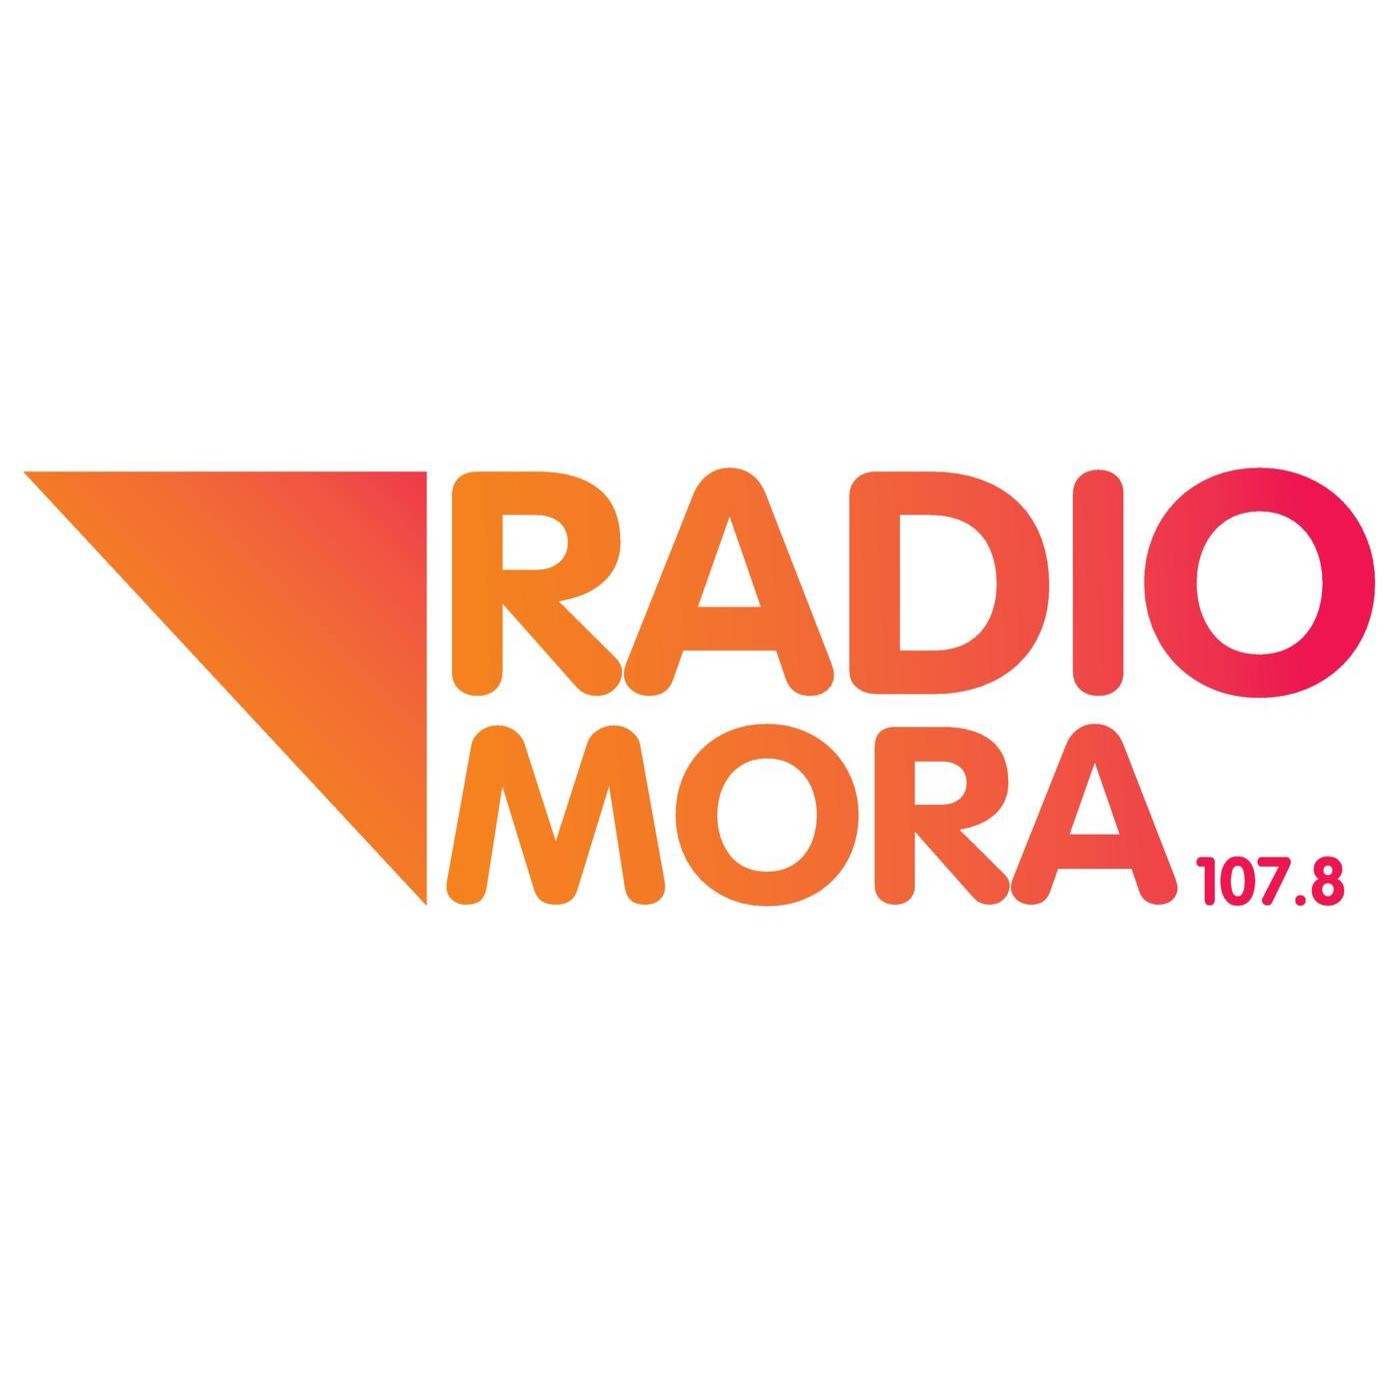 Podcast de radiomora